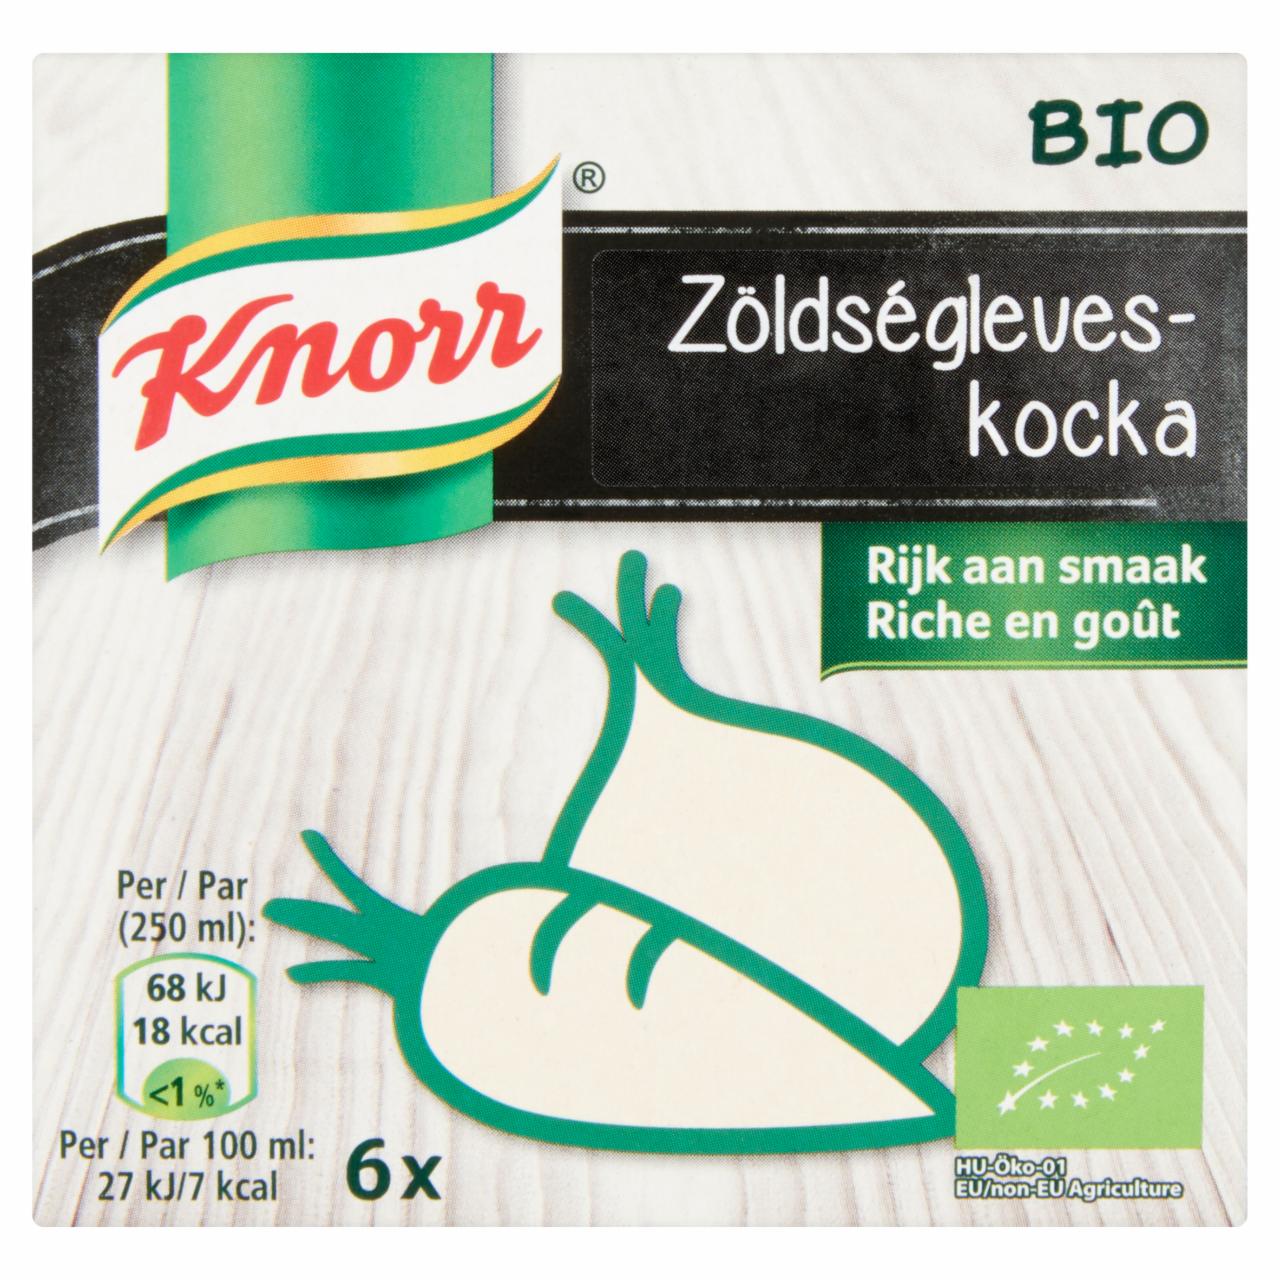 Képek - Knorr BIO zöldségleveskocka 66 g